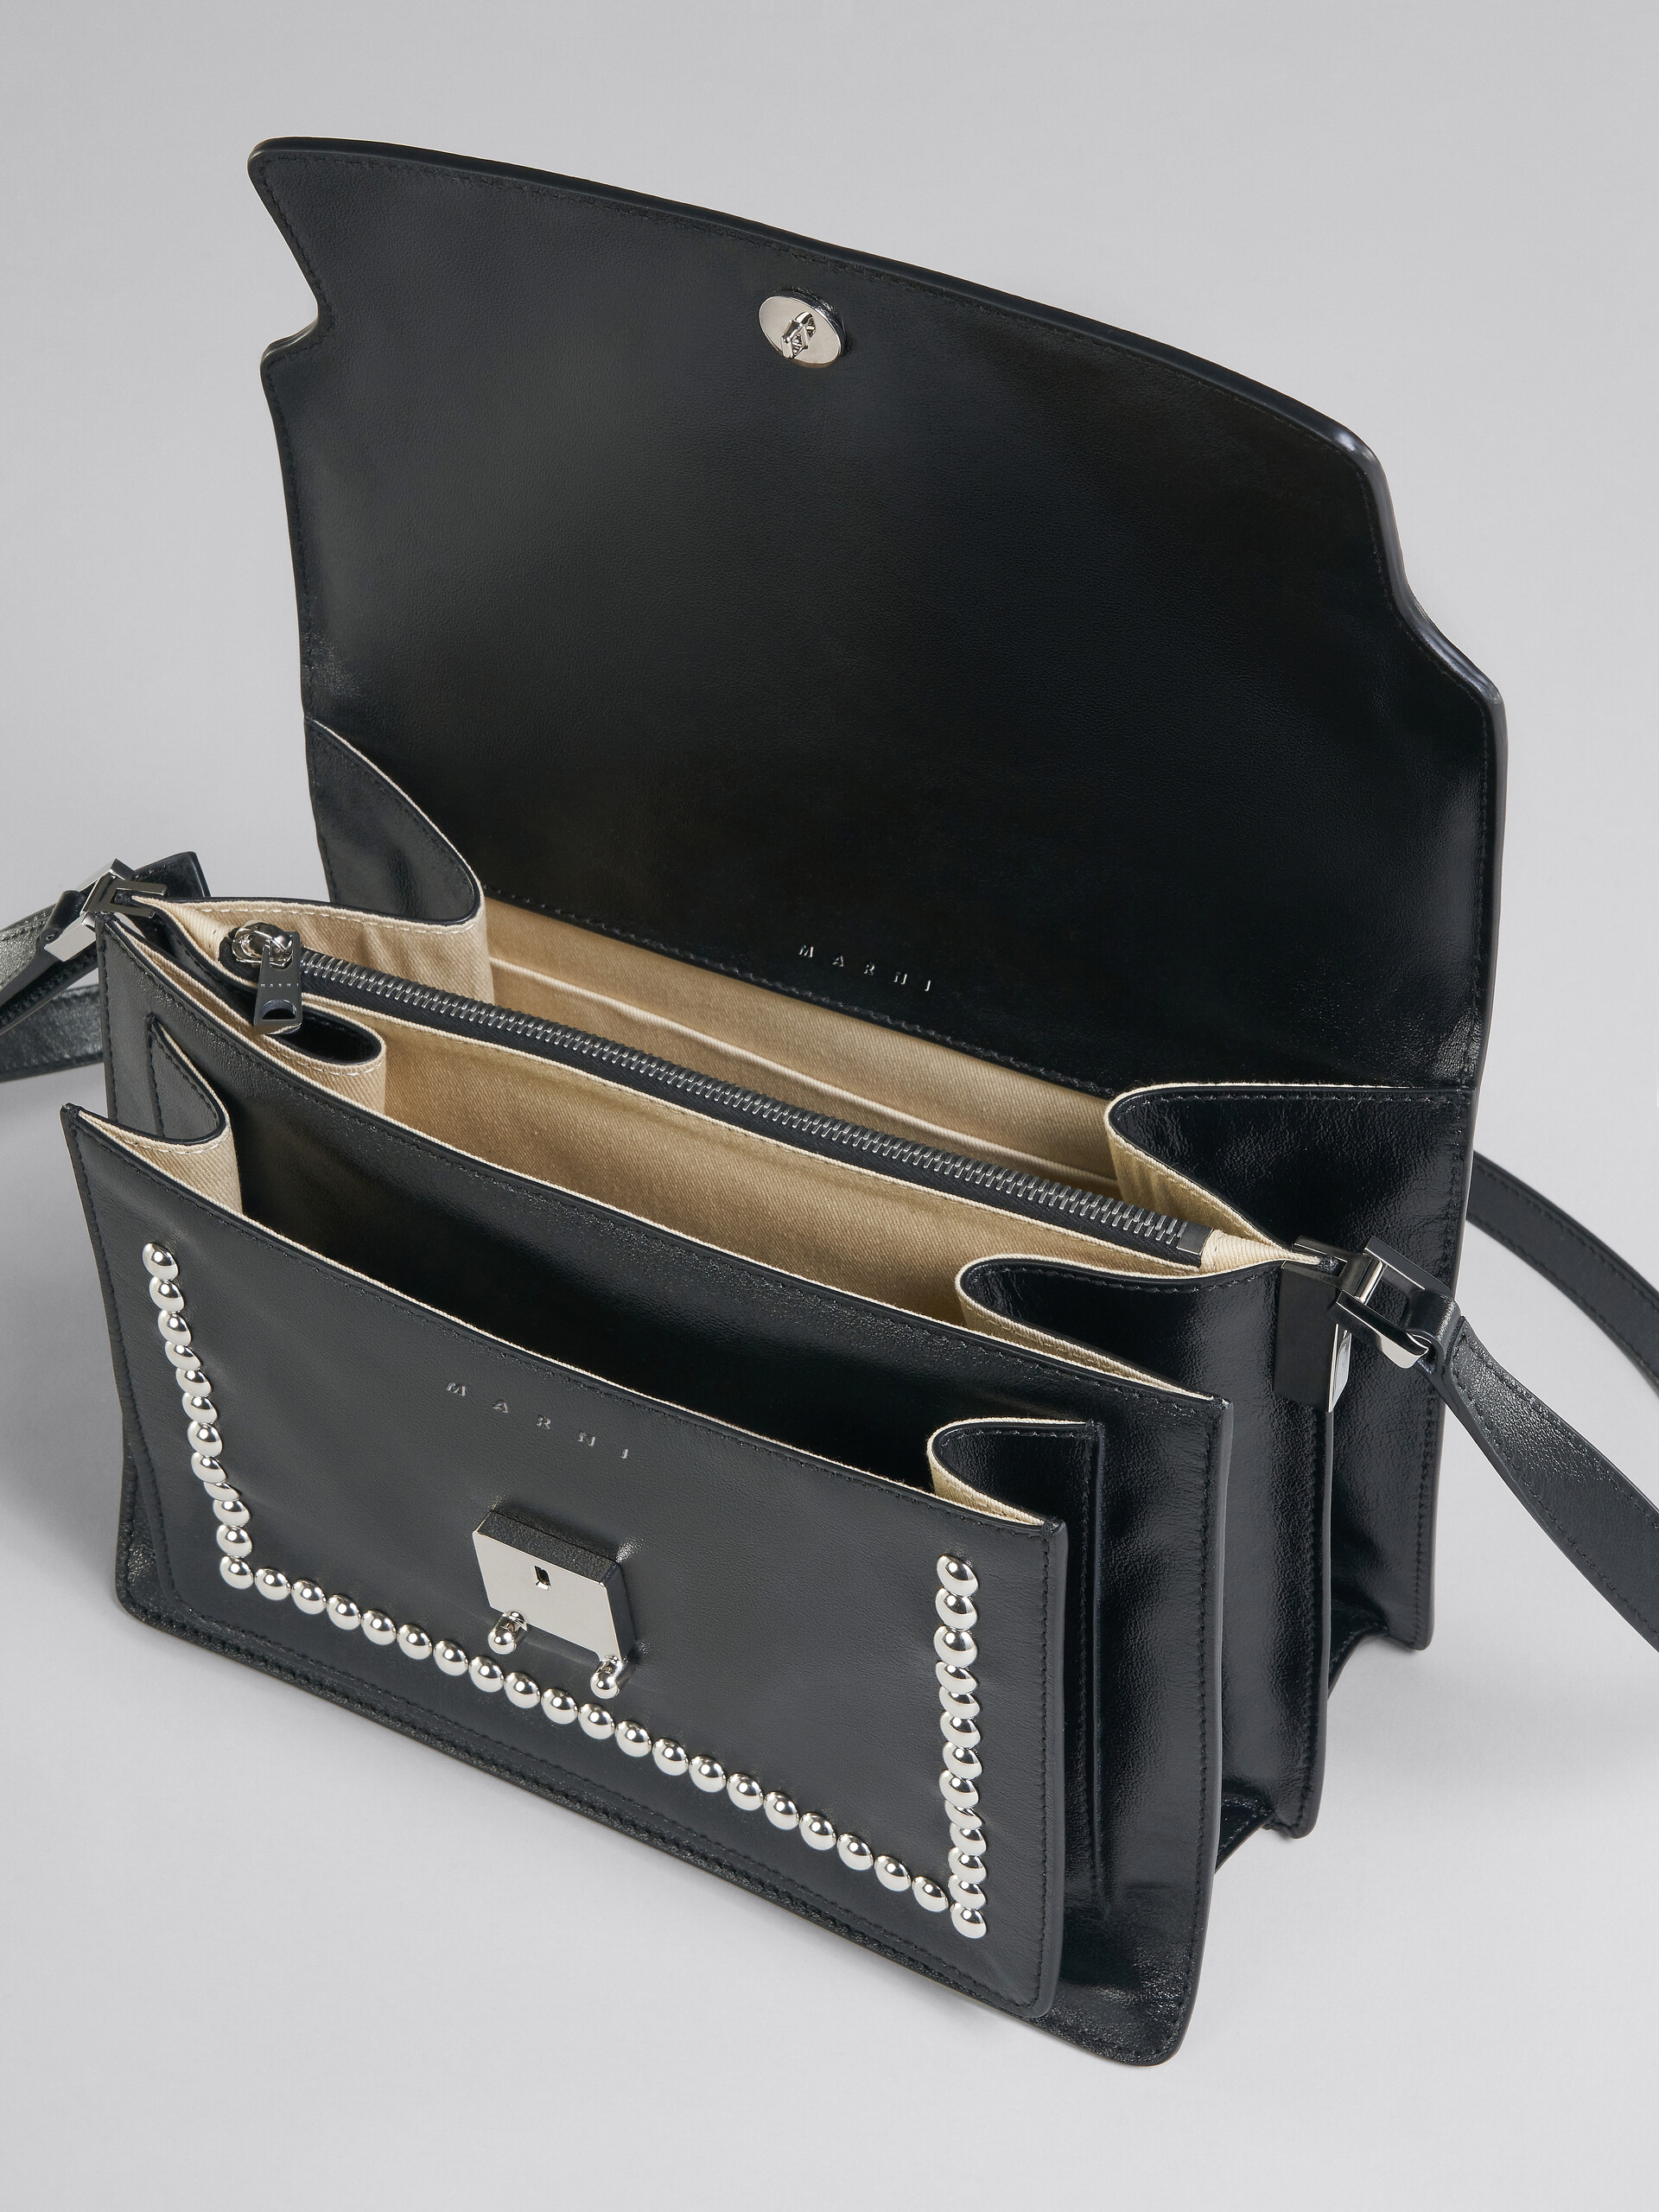 Trunk Soft Large Bag in black leather with studs - Shoulder Bag - Image 4